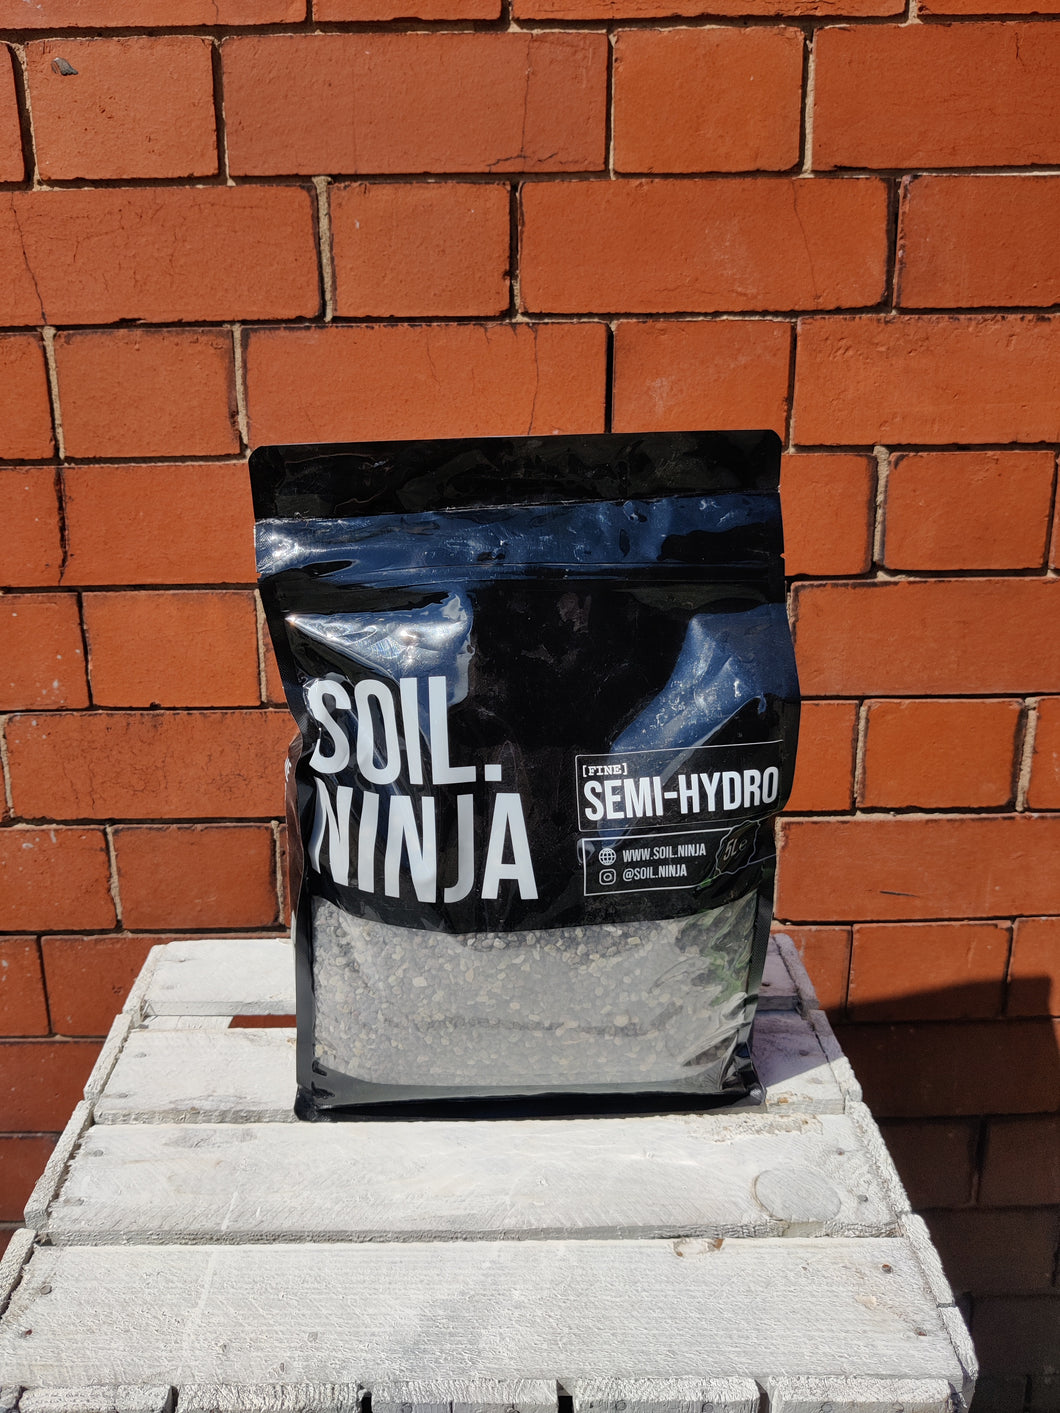 Semi-Hydro [Fine] 5L Soil. Ninja